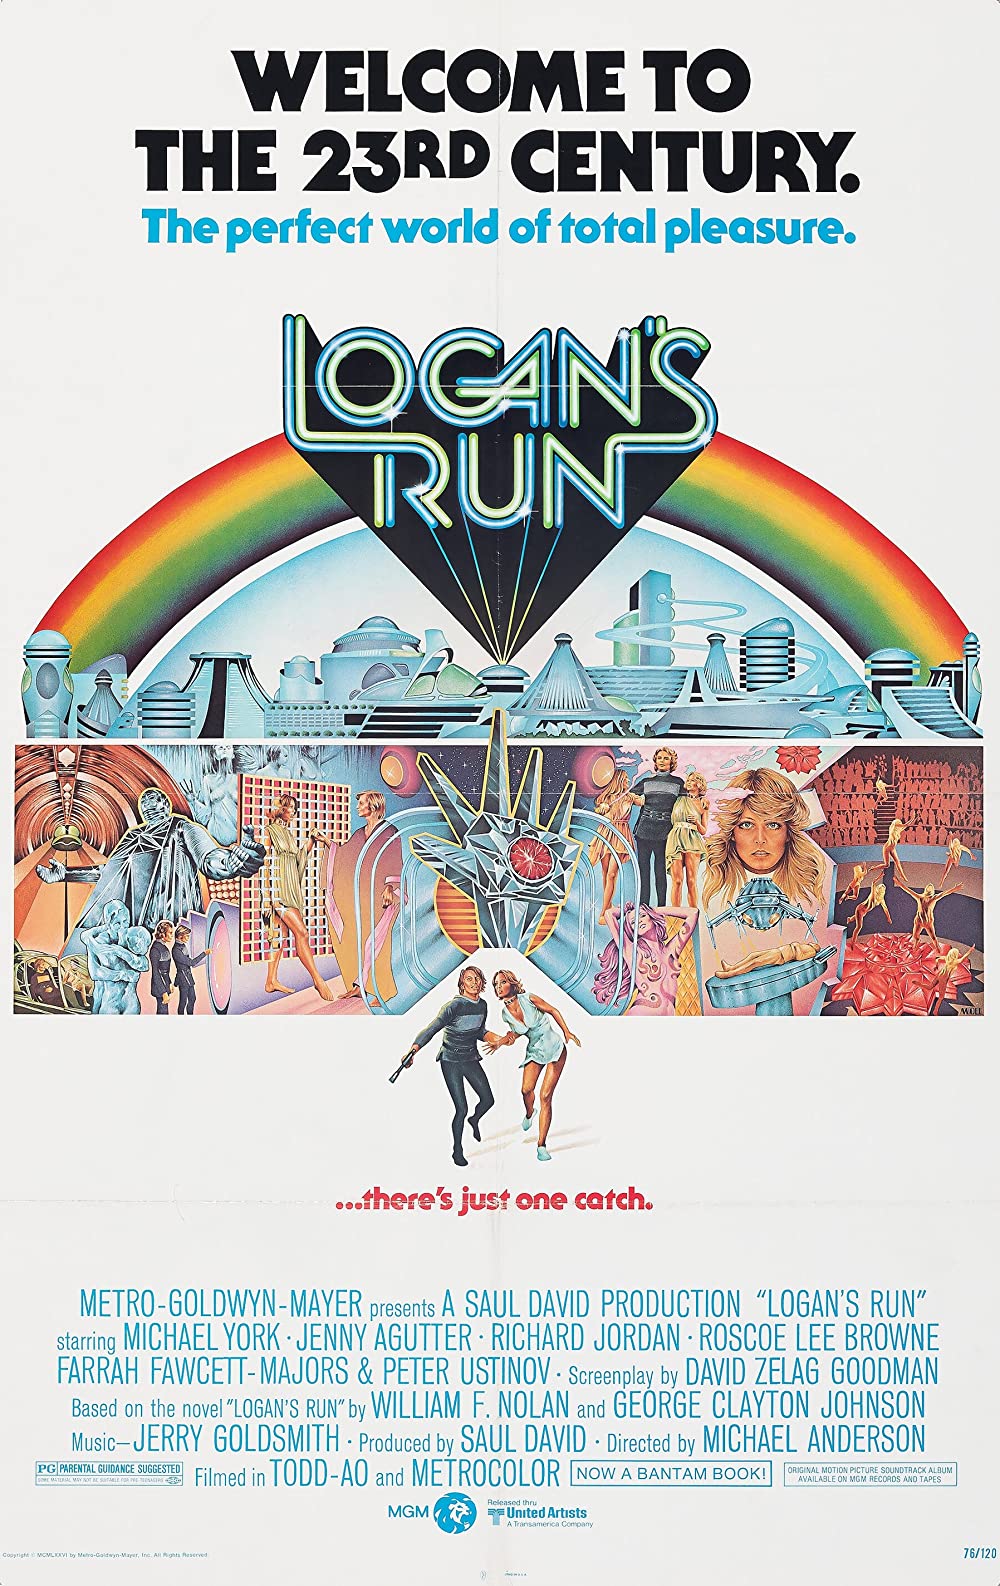 Filmbeschreibung zu Logans Run